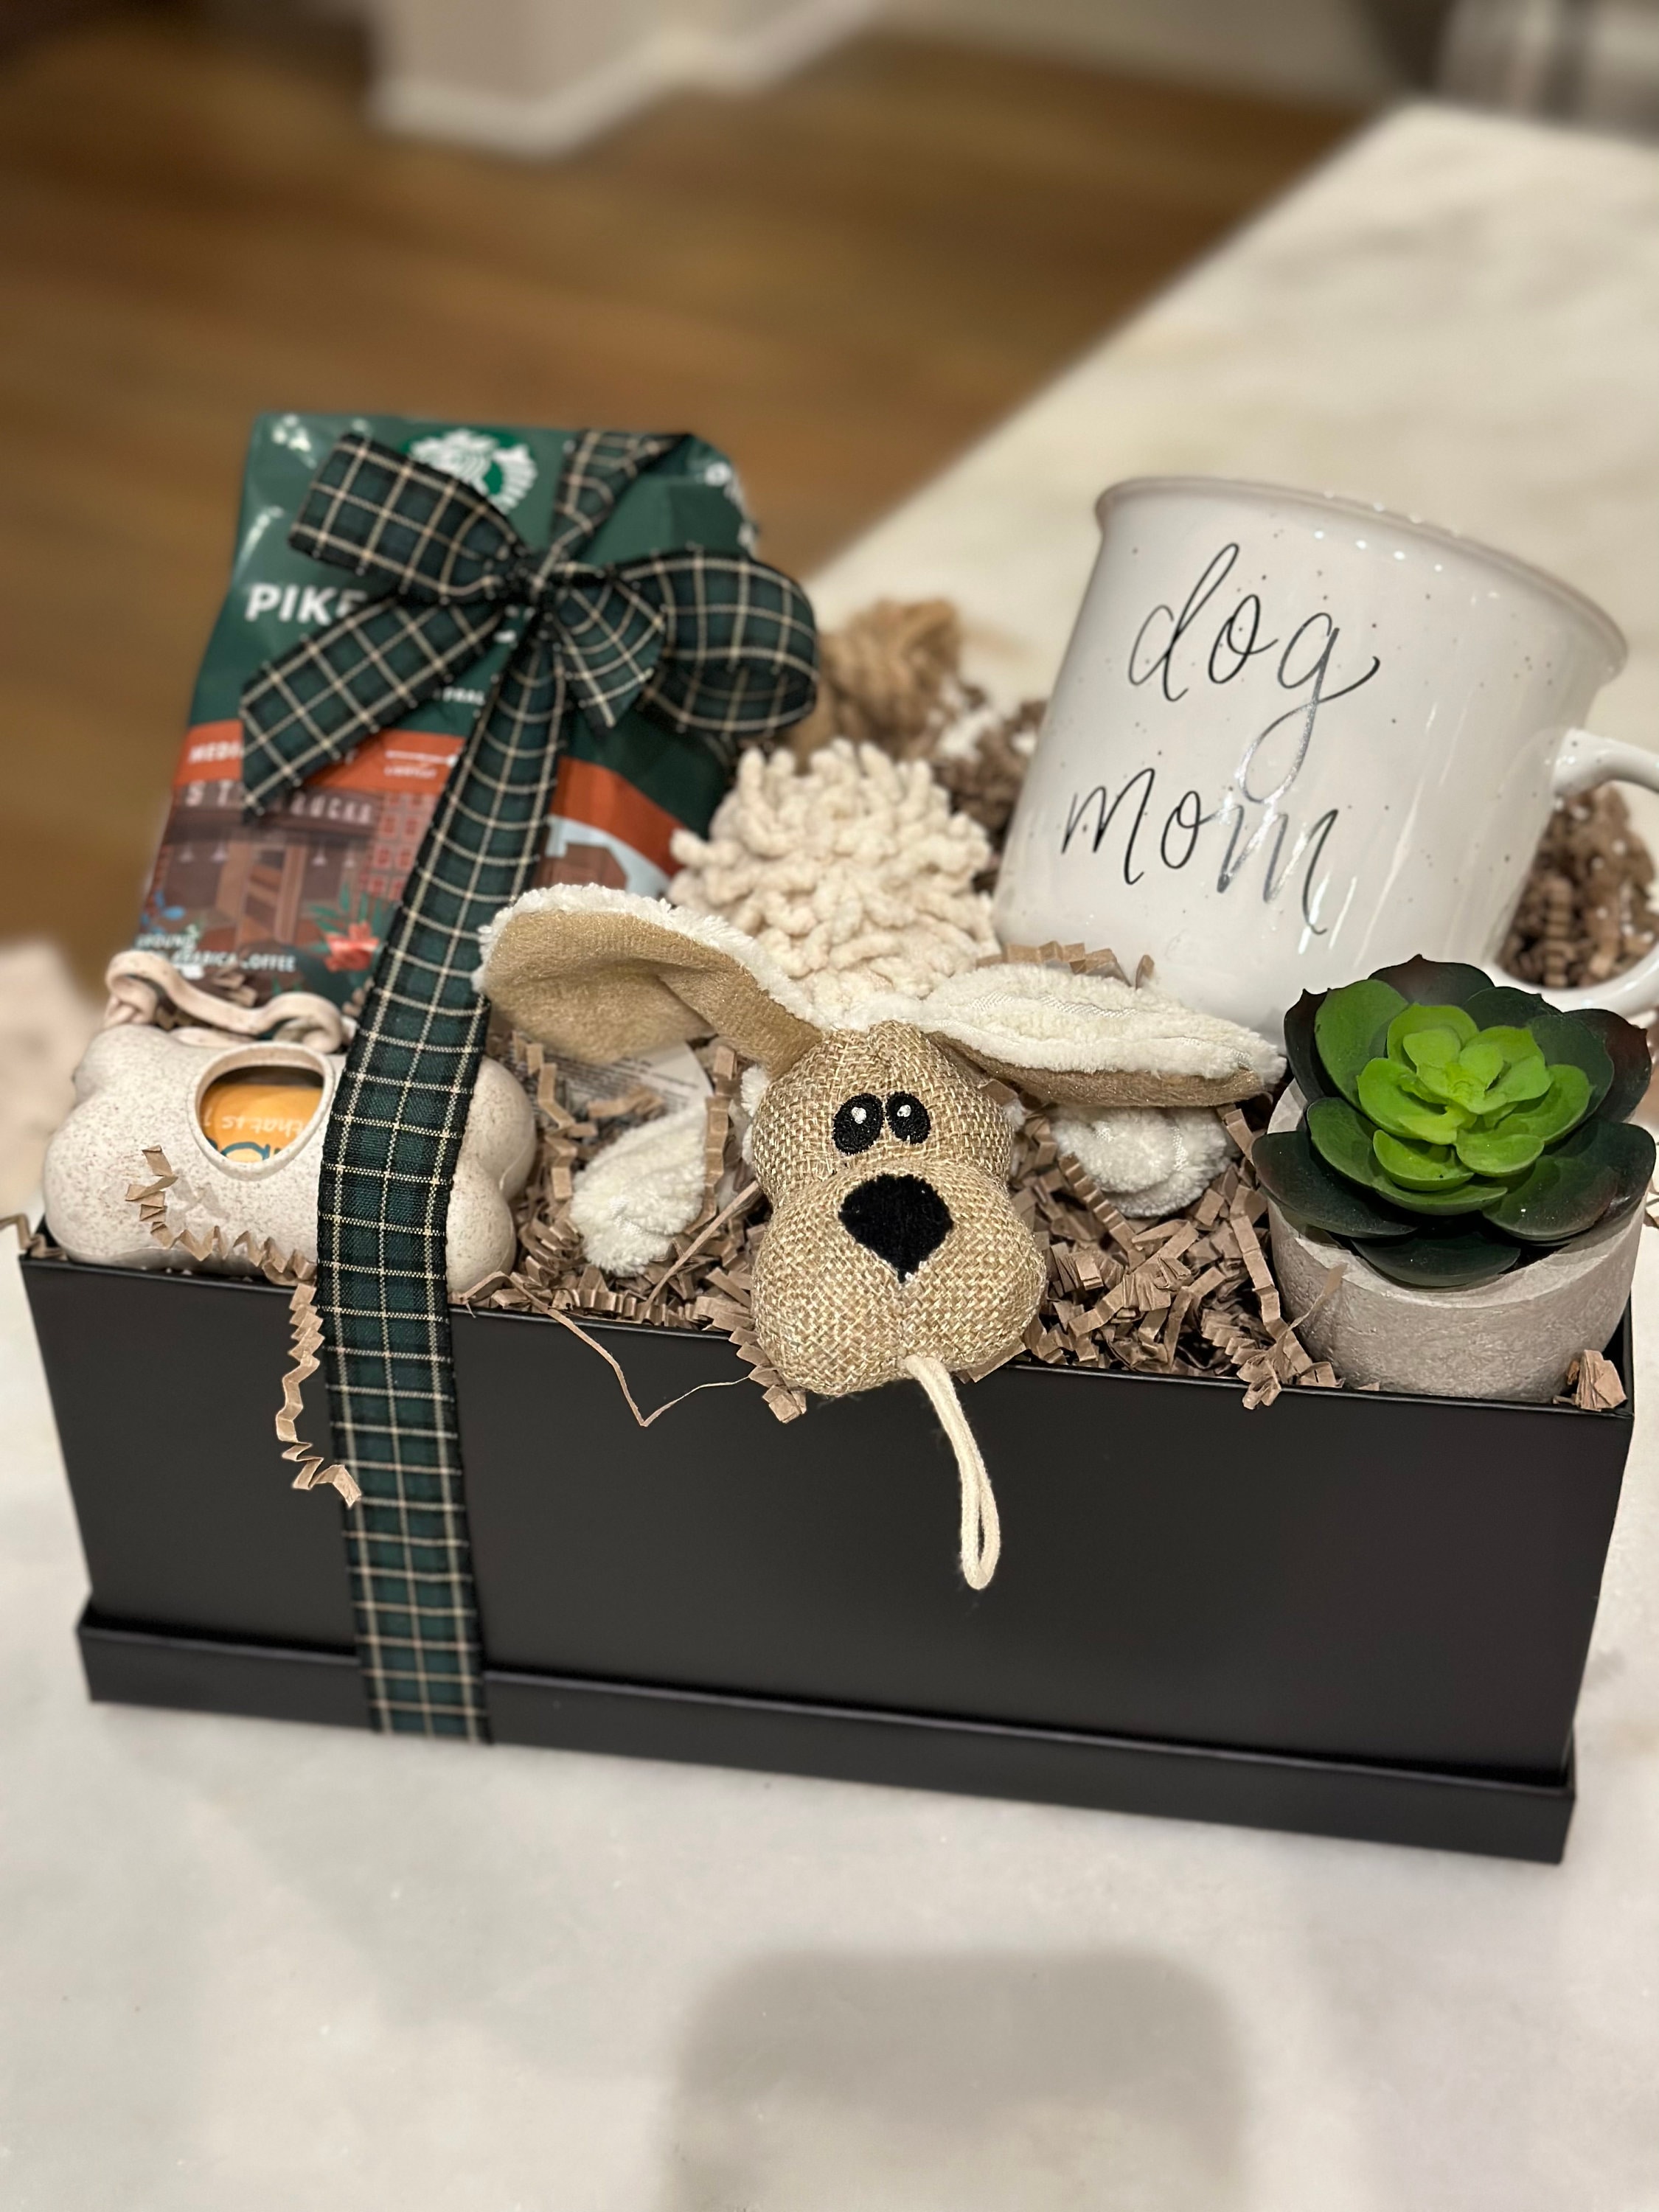 Dog Mom Gift Box, Marketplace